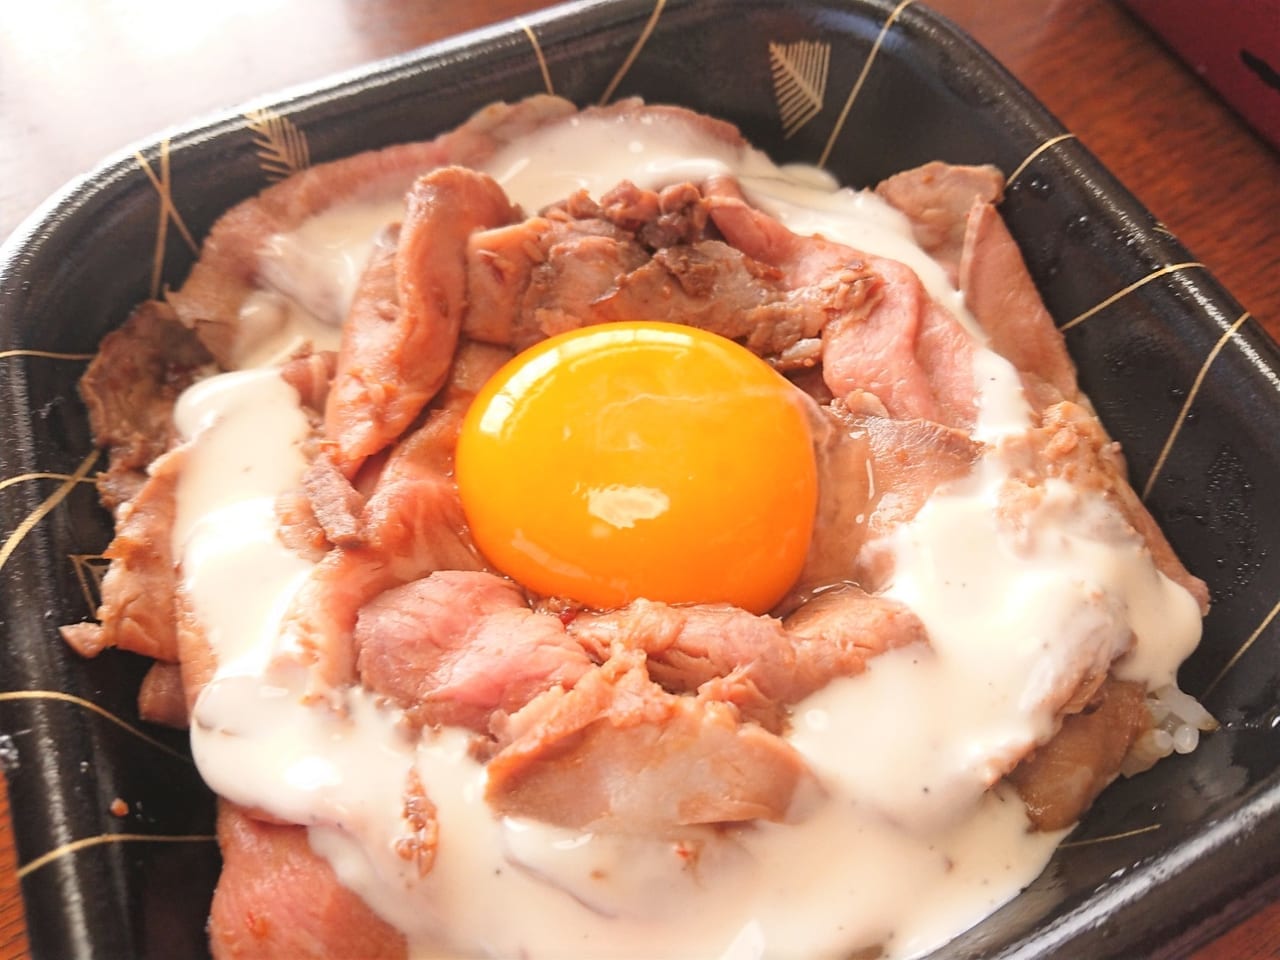 伊勢崎市のレストラン「アンジェロ」ローストビーフ丼をテイクアウトした